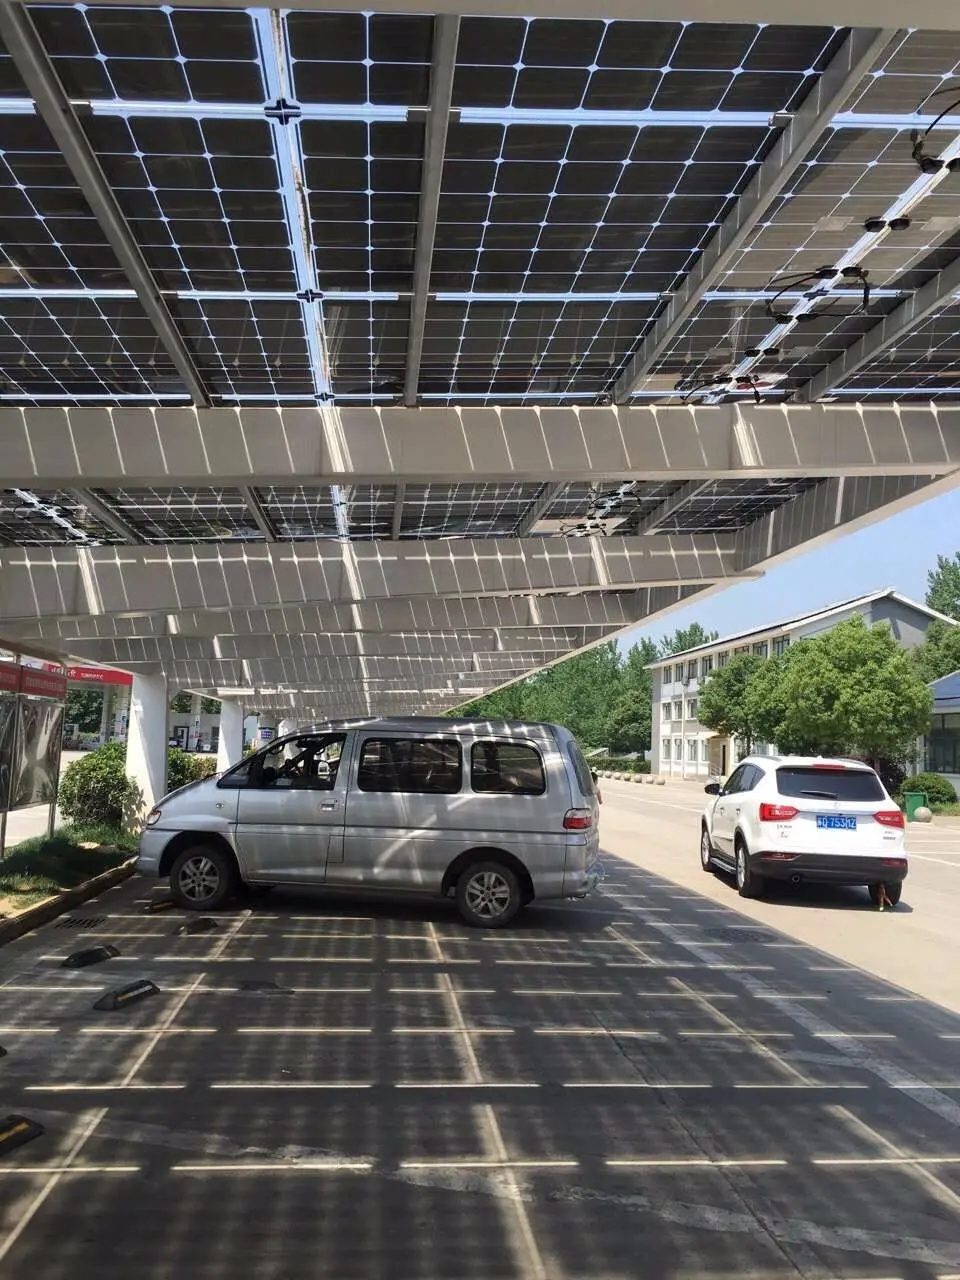 يوين-S لوحة طاقة شمسية سيارة ميناء الشمسية هيكل مرآب الشمسية مرآب نظام التركيب